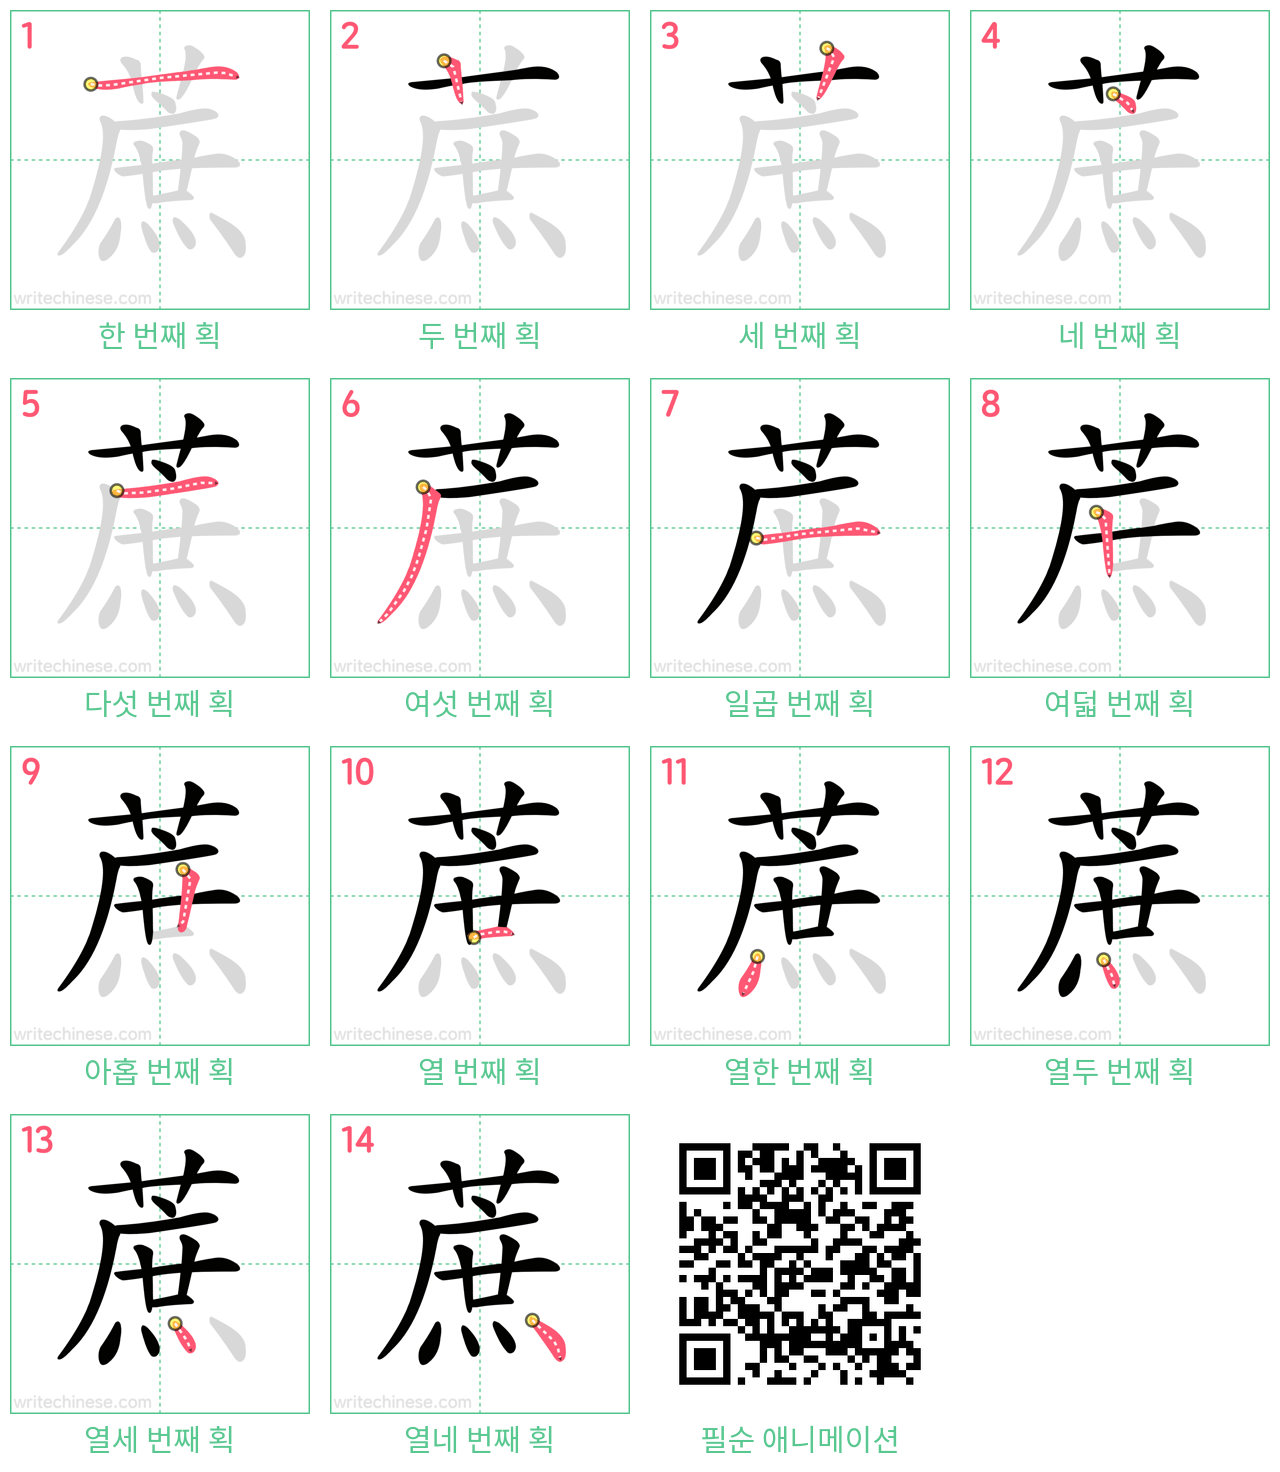 蔗 step-by-step stroke order diagrams